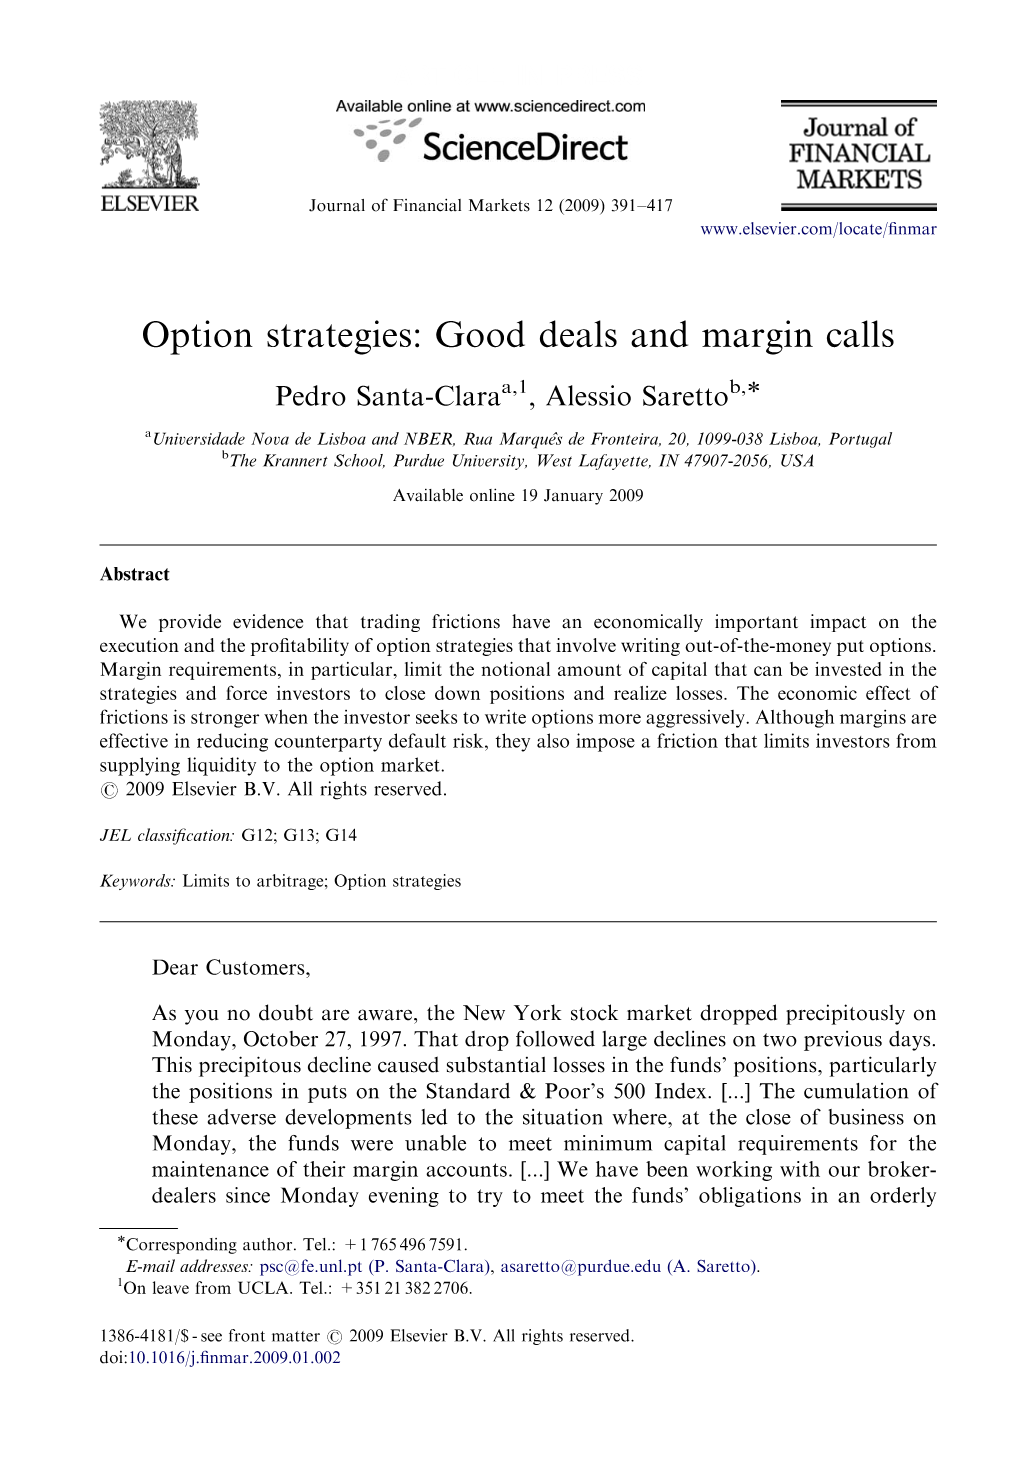 Option Strategies: Good Deals and Margin Calls